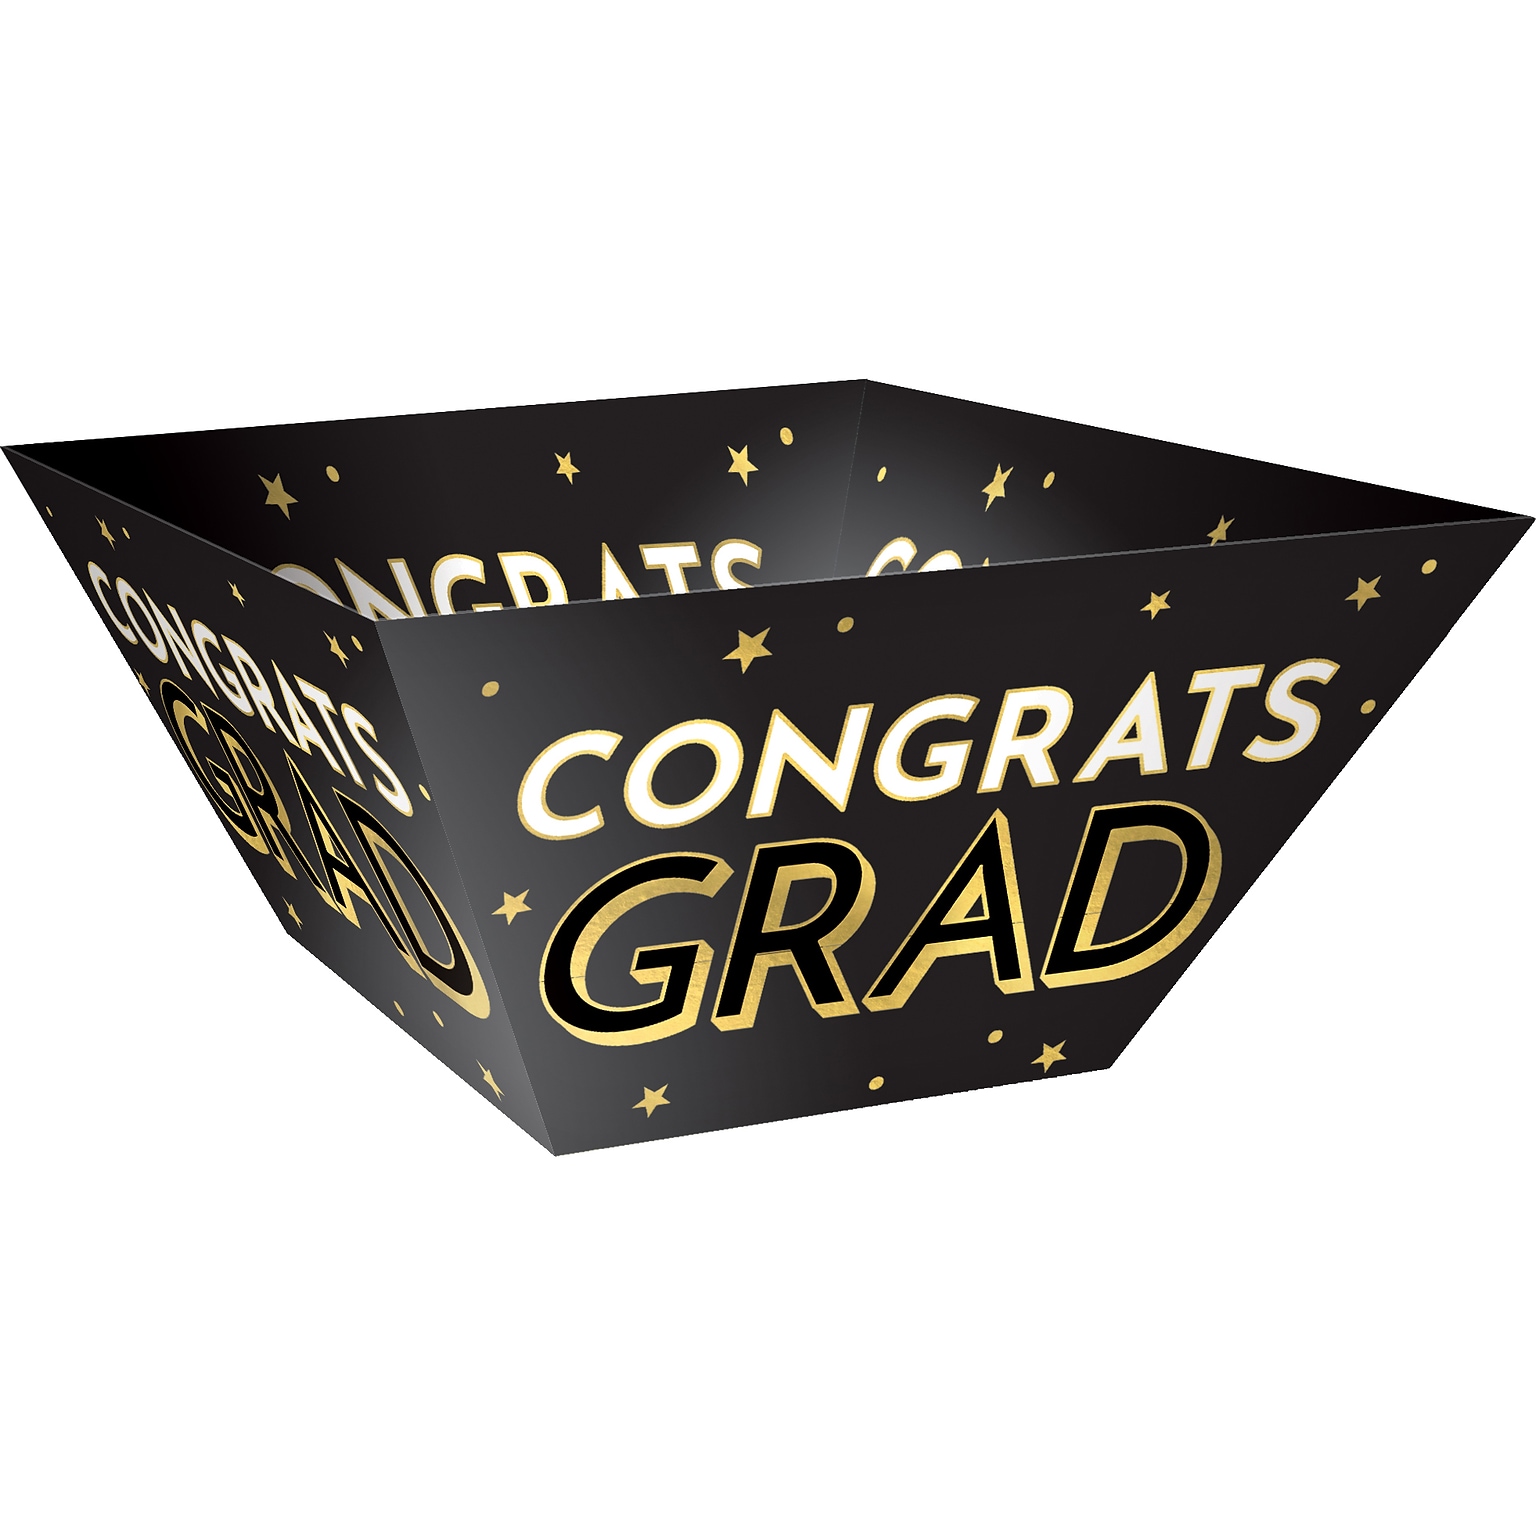 Amscan Congrats Grad Graduation Snack Bowl, Multicolor, 3/Set, 2 Sets/Pack (431527)